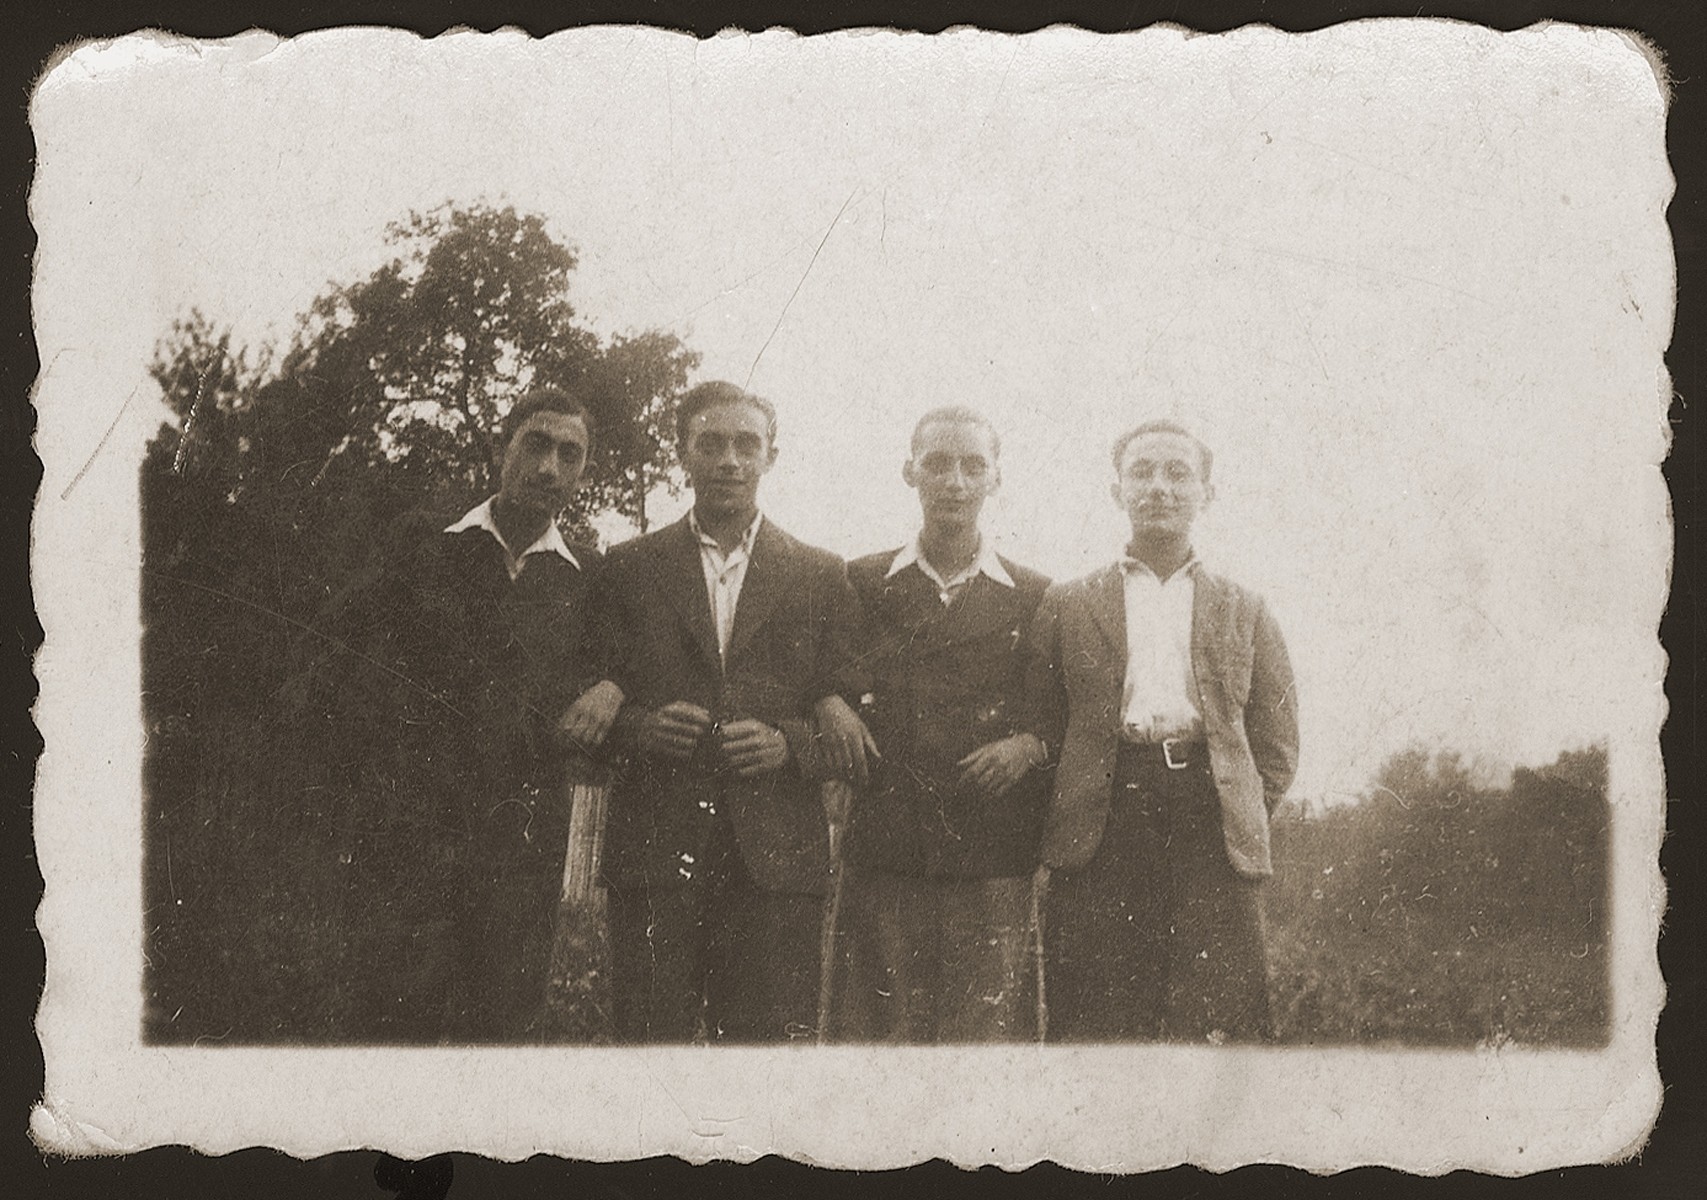 Group portrait of four childhood friends from Dabrowa Gornicza reunited in the New Palestine displaced camp near Salzburg. 

Standing from left to are: Moniek Rozen, Szlamek Rozencwajg, Jakub Bajtner and Moniek Szeps.